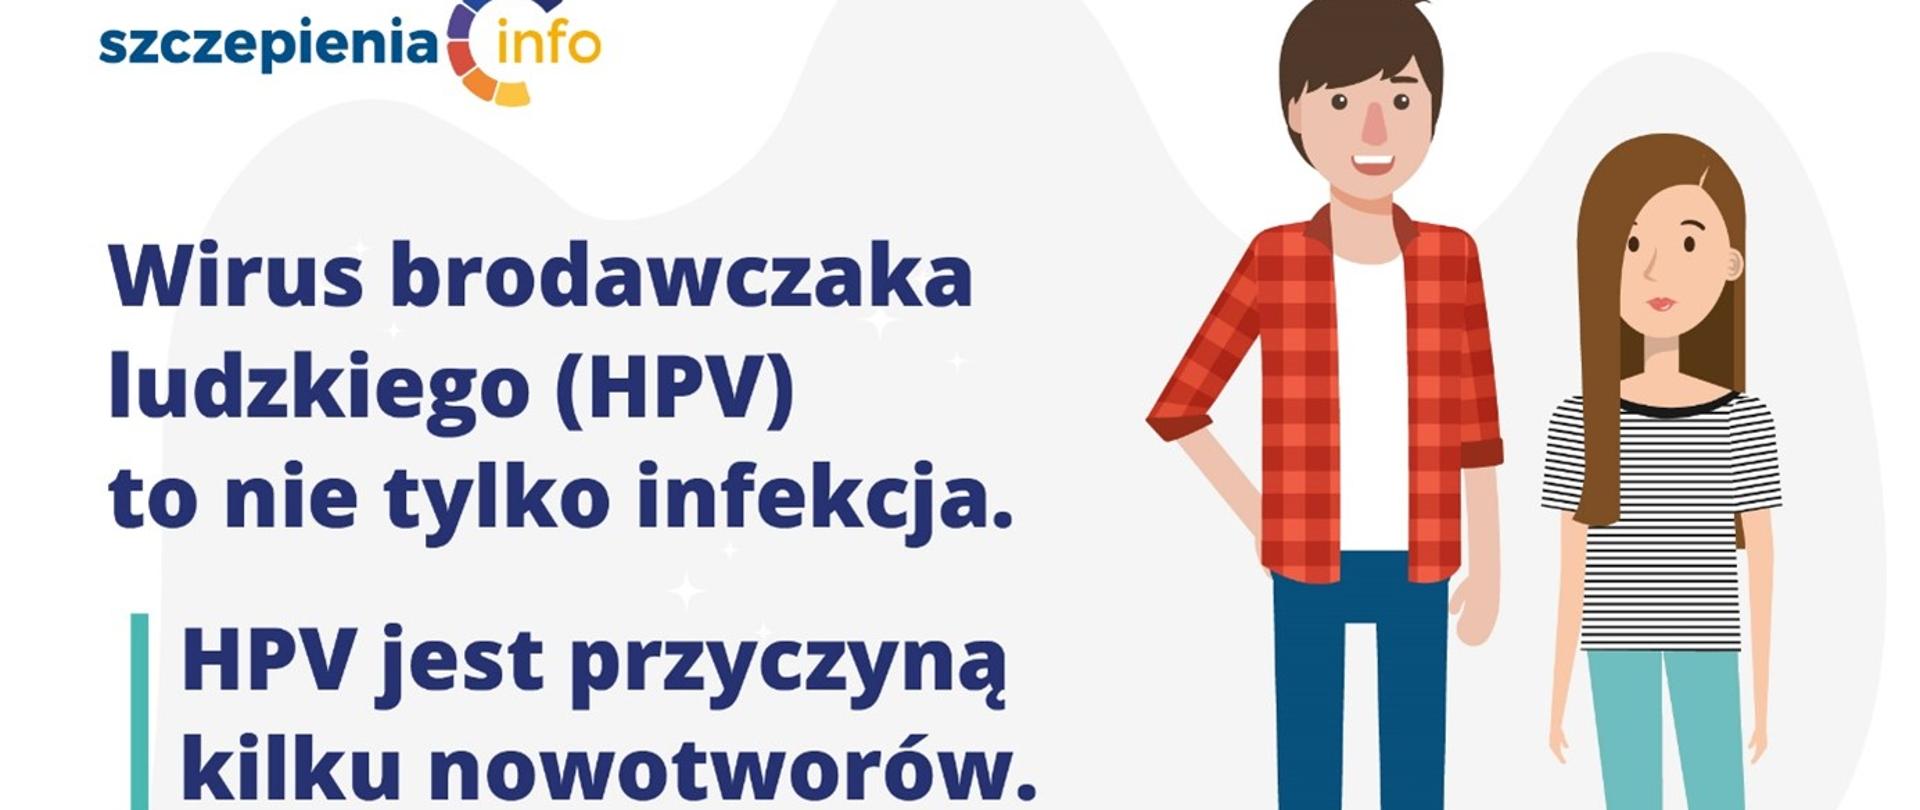 Program bezpłatnych szczepień przeciw HPV